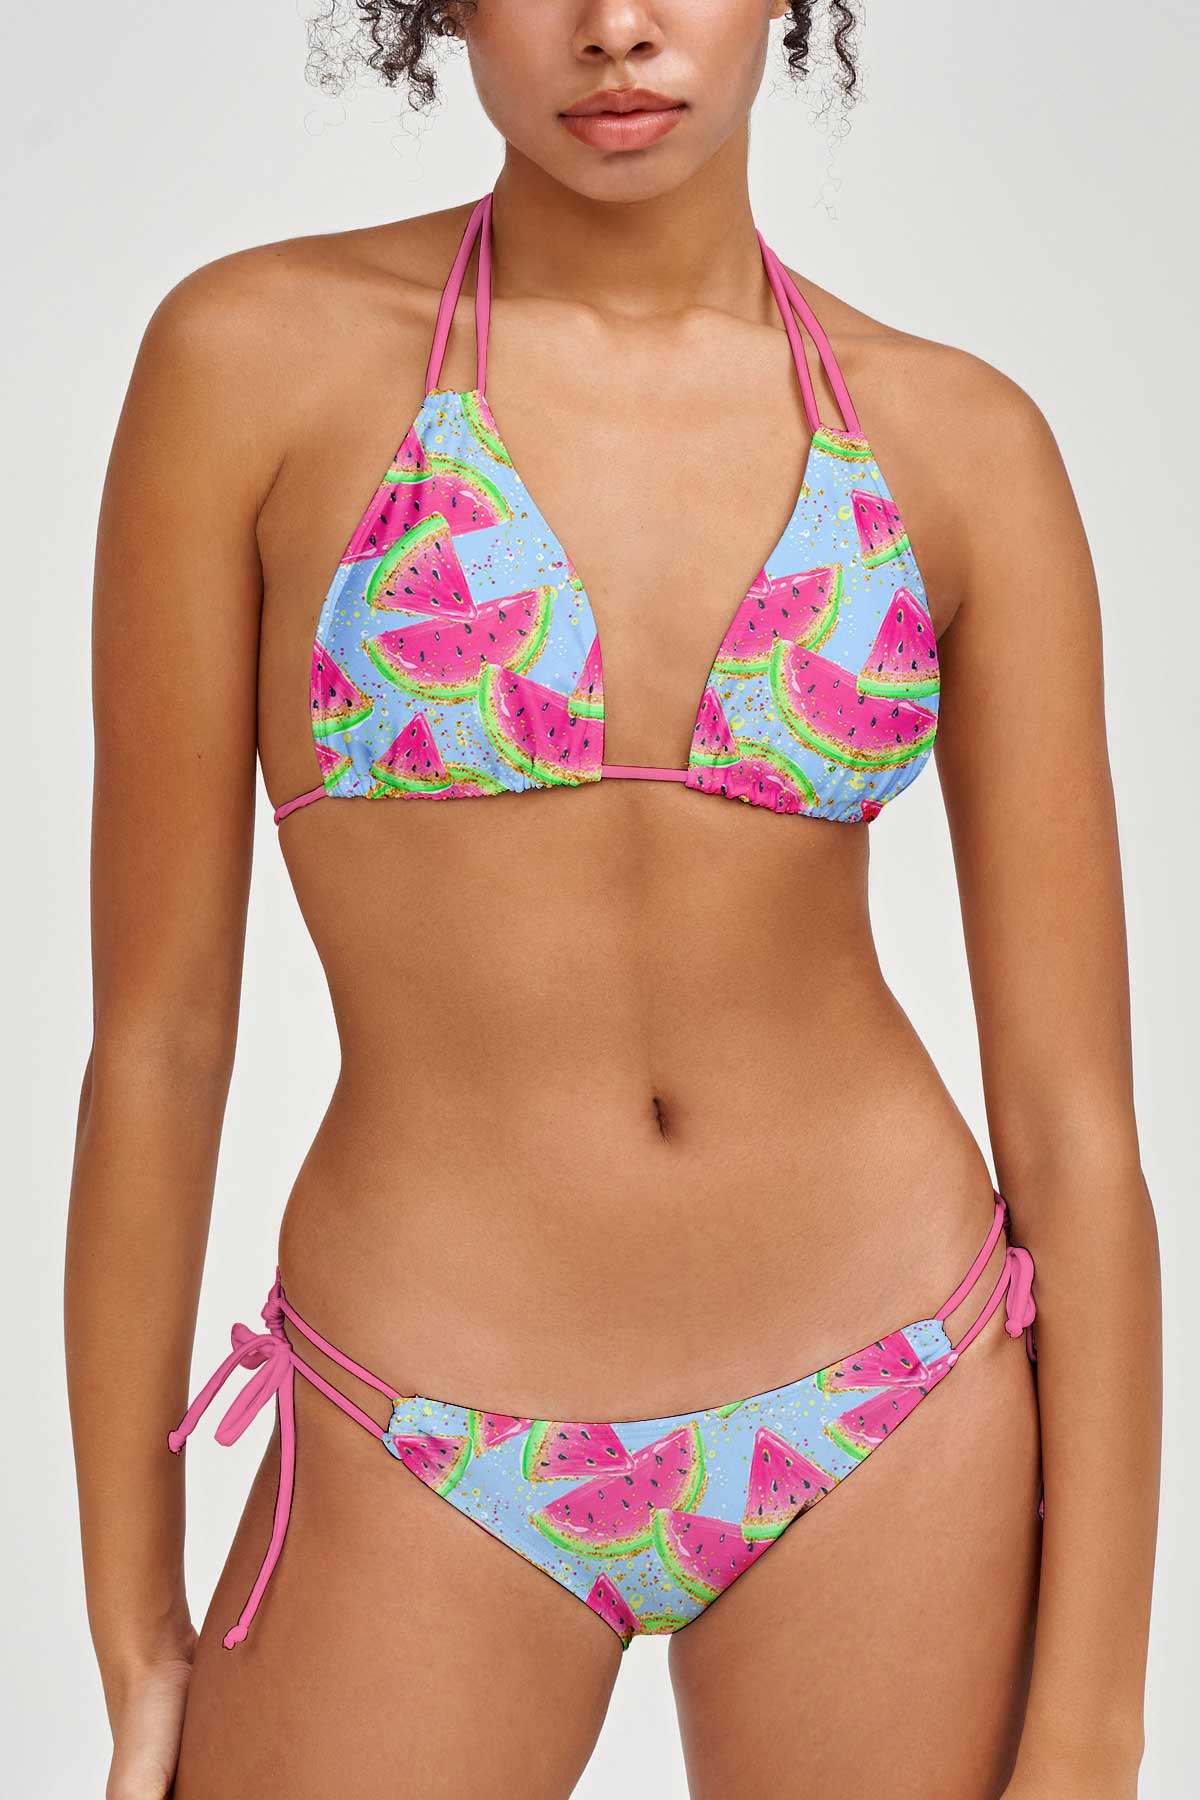 Piña Colada Lara Pink Pineapple Triangle String Bikini Top - Women